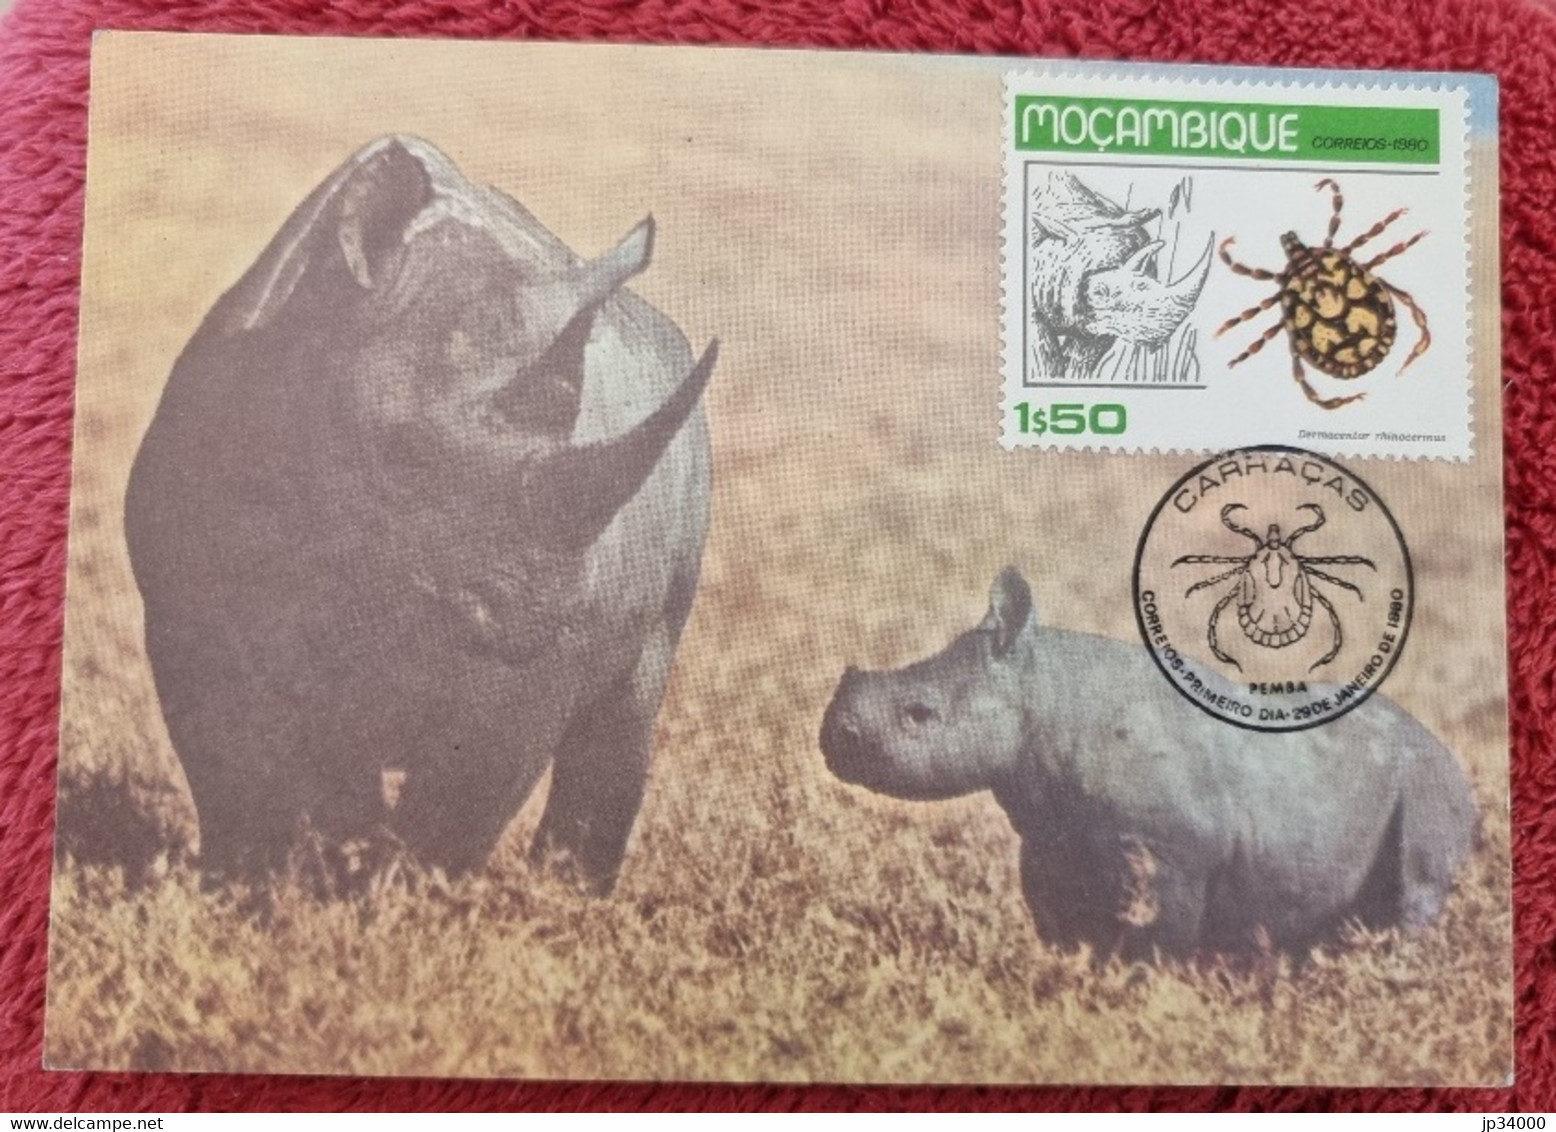 MOZAMBIQUE  Rhinocéros, Insectes, Tique, Yvert N° 732 FDC, 1er Jour, Carte Maximum 1980 - Neushoorn